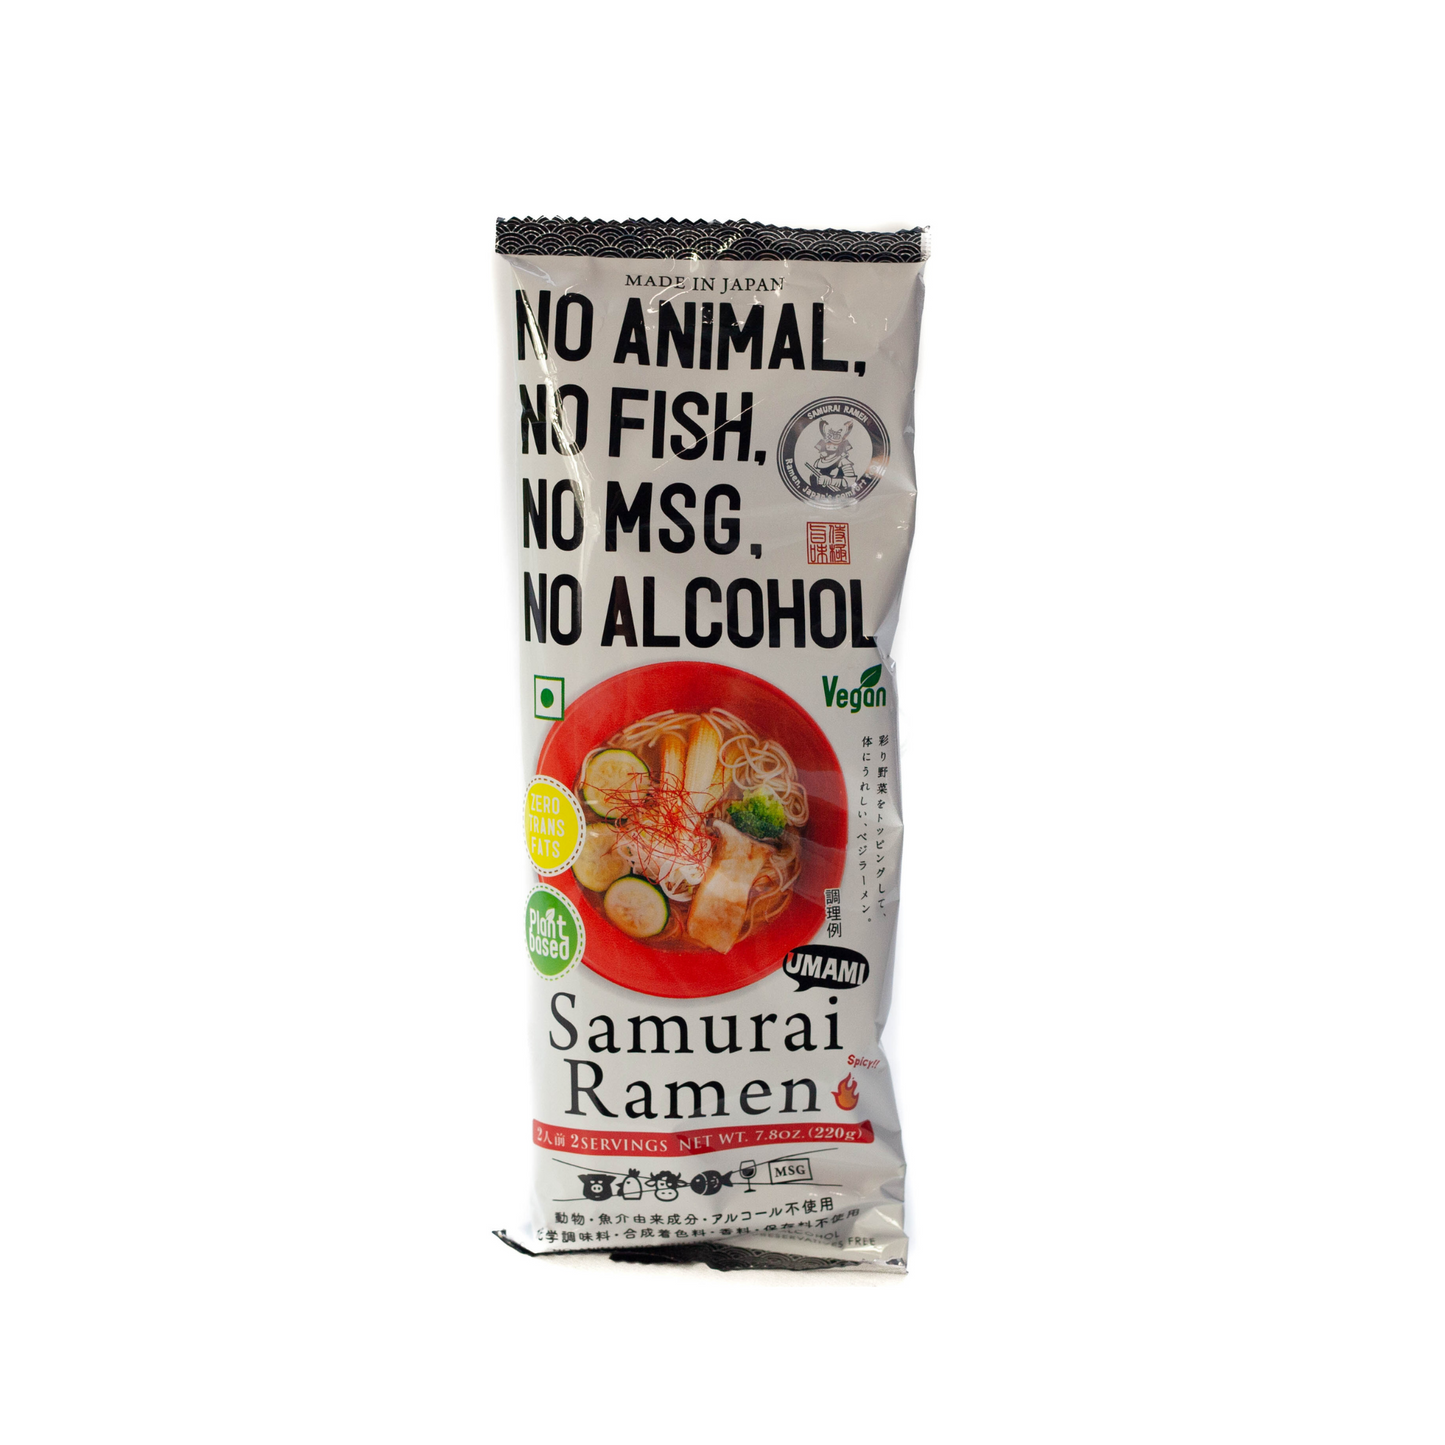 Ramen Samurai Vegano UMAMI (2 porciones) | Picante